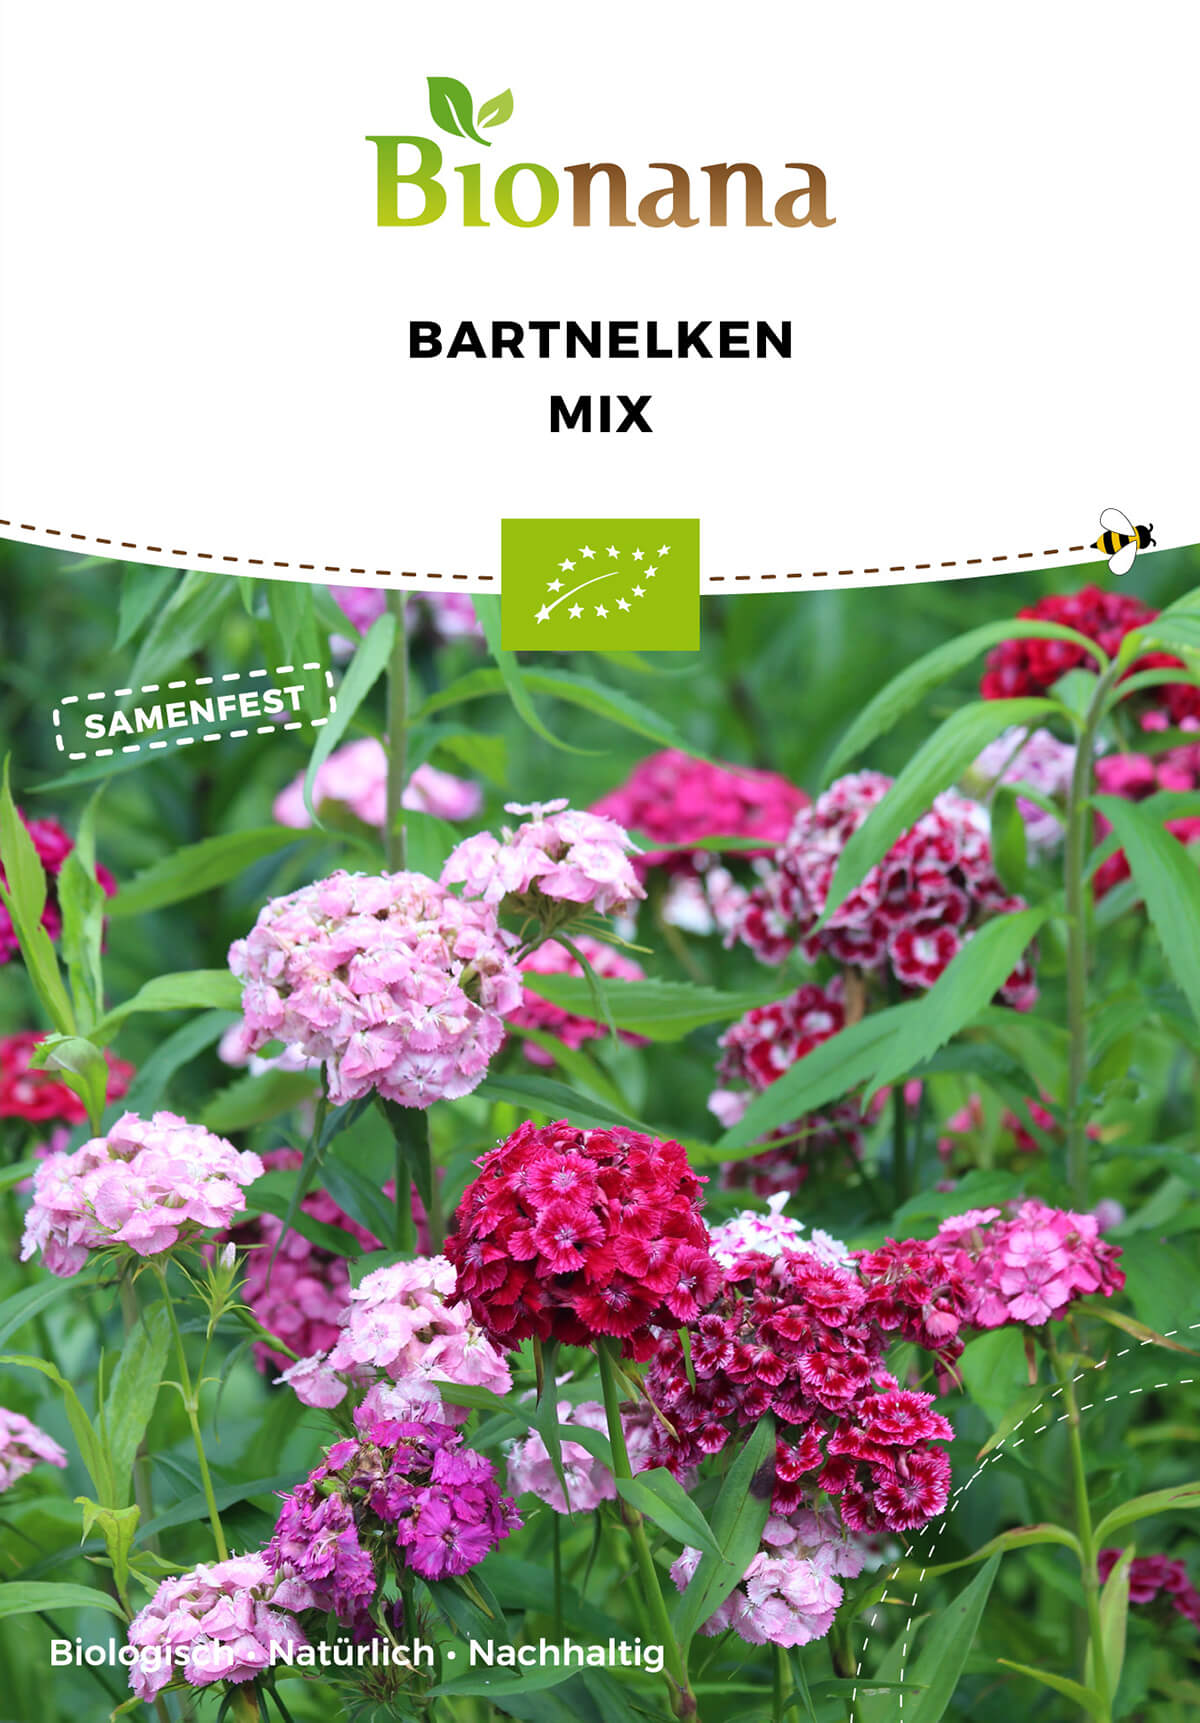 Bartnelken Mix | BIO Nelkensamen von Bionana